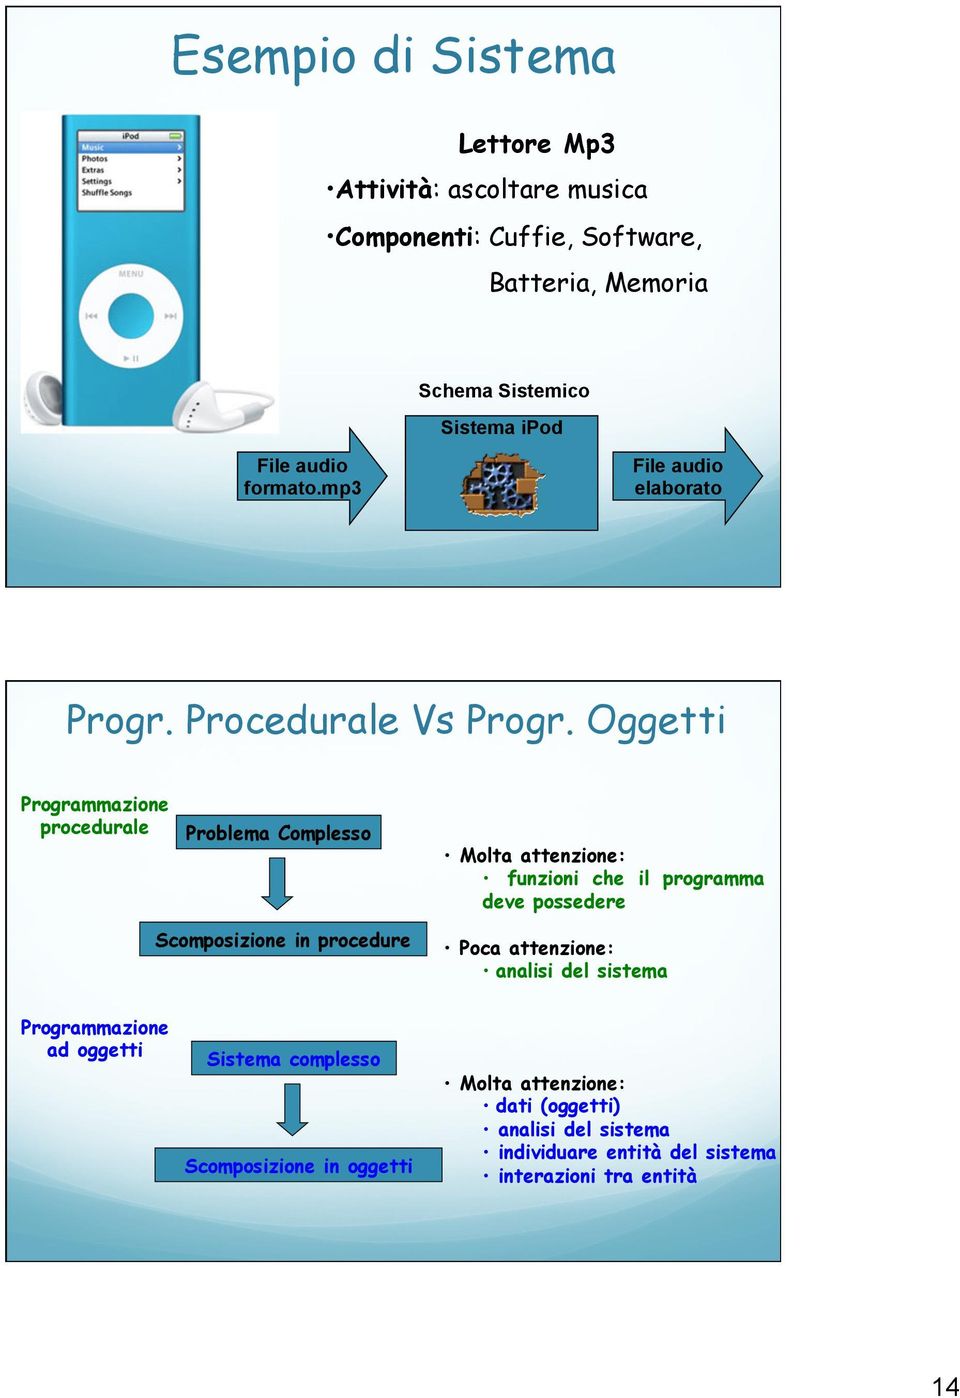 Oggetti Programmazione procedurale Problema Complesso Molta attenzione: funzioni che il programma deve possedere Scomposizione in procedure